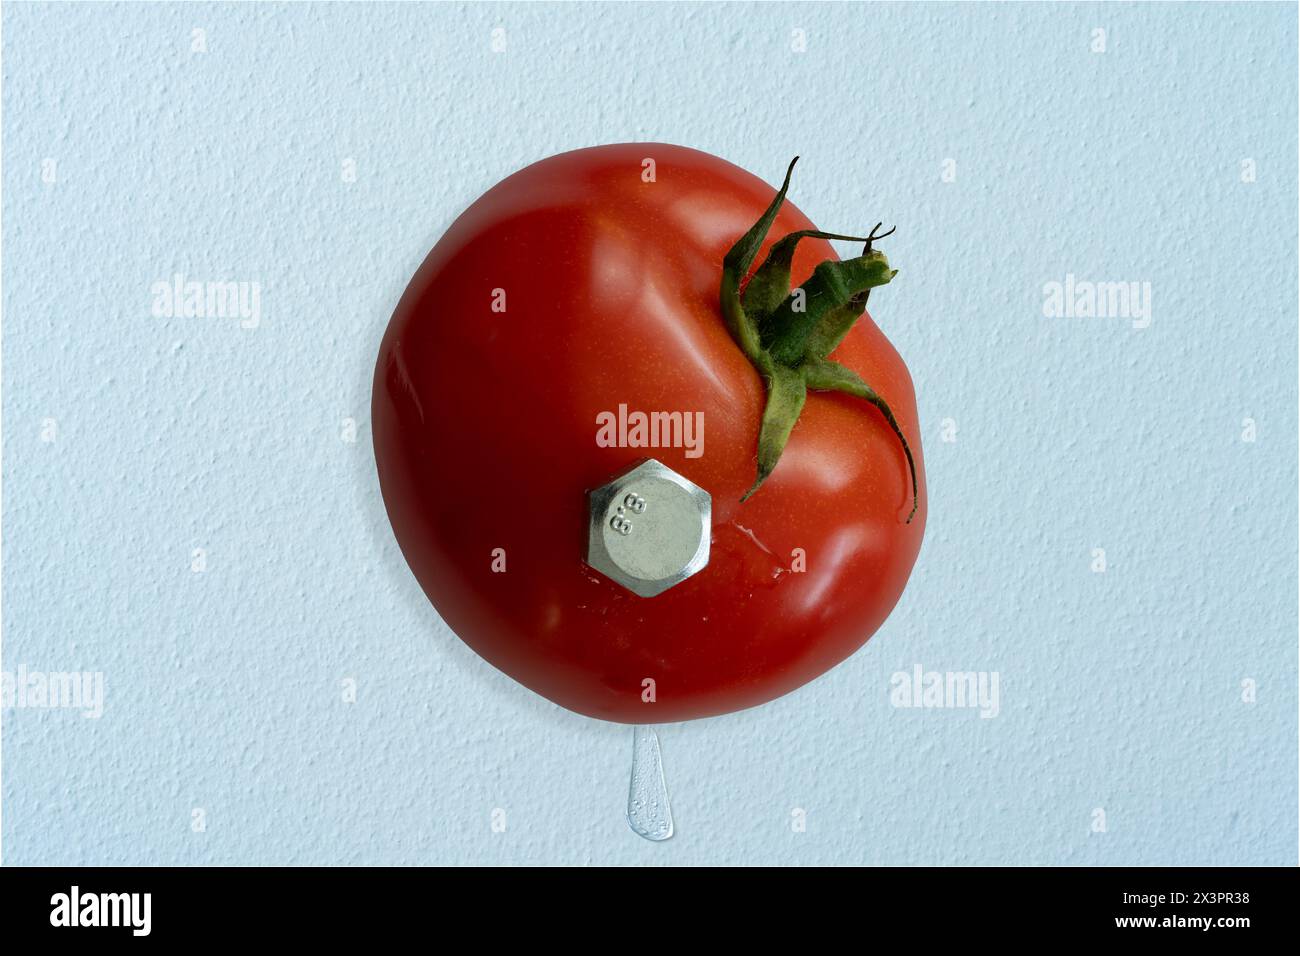 Tomate wurde mit einem riesigen Sechskantschraube an der Wand befestigt. Saft spritzt auf beiden Seiten heraus. Konzeptfotografie. Stockfoto